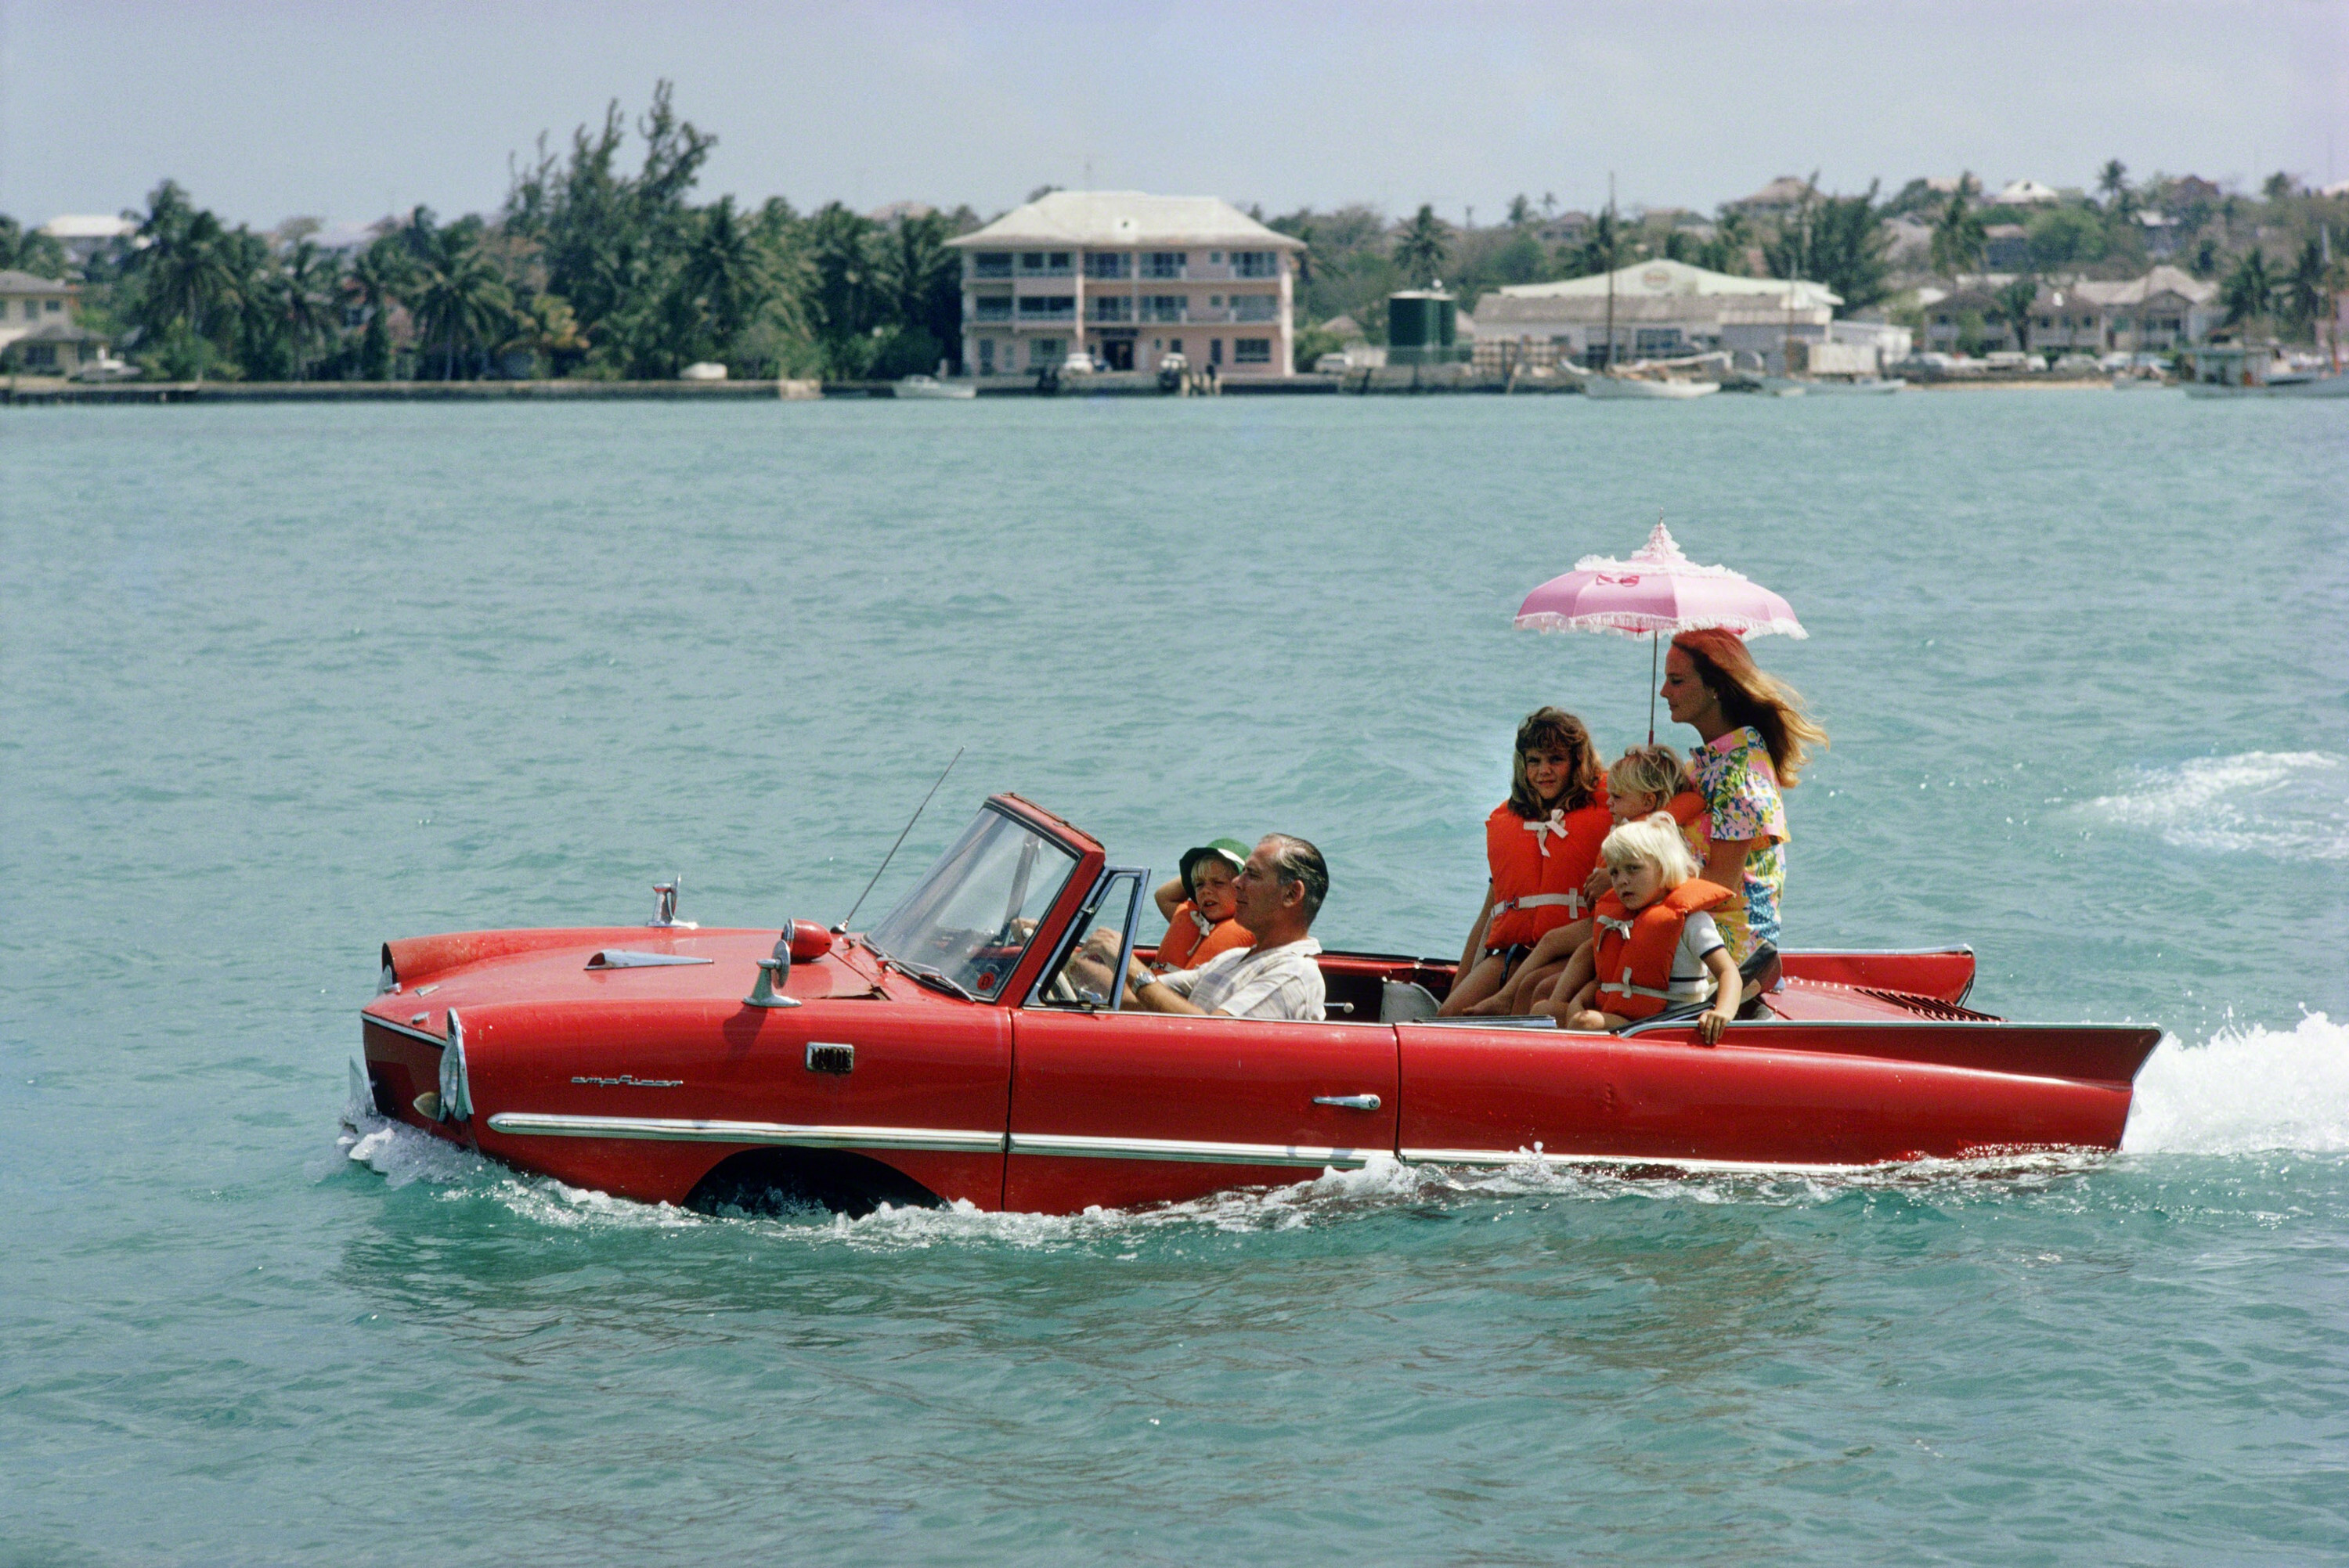 «Амфикар», гавань Нассау, Багамы, 1967 год. Фотограф Слим Ааронс